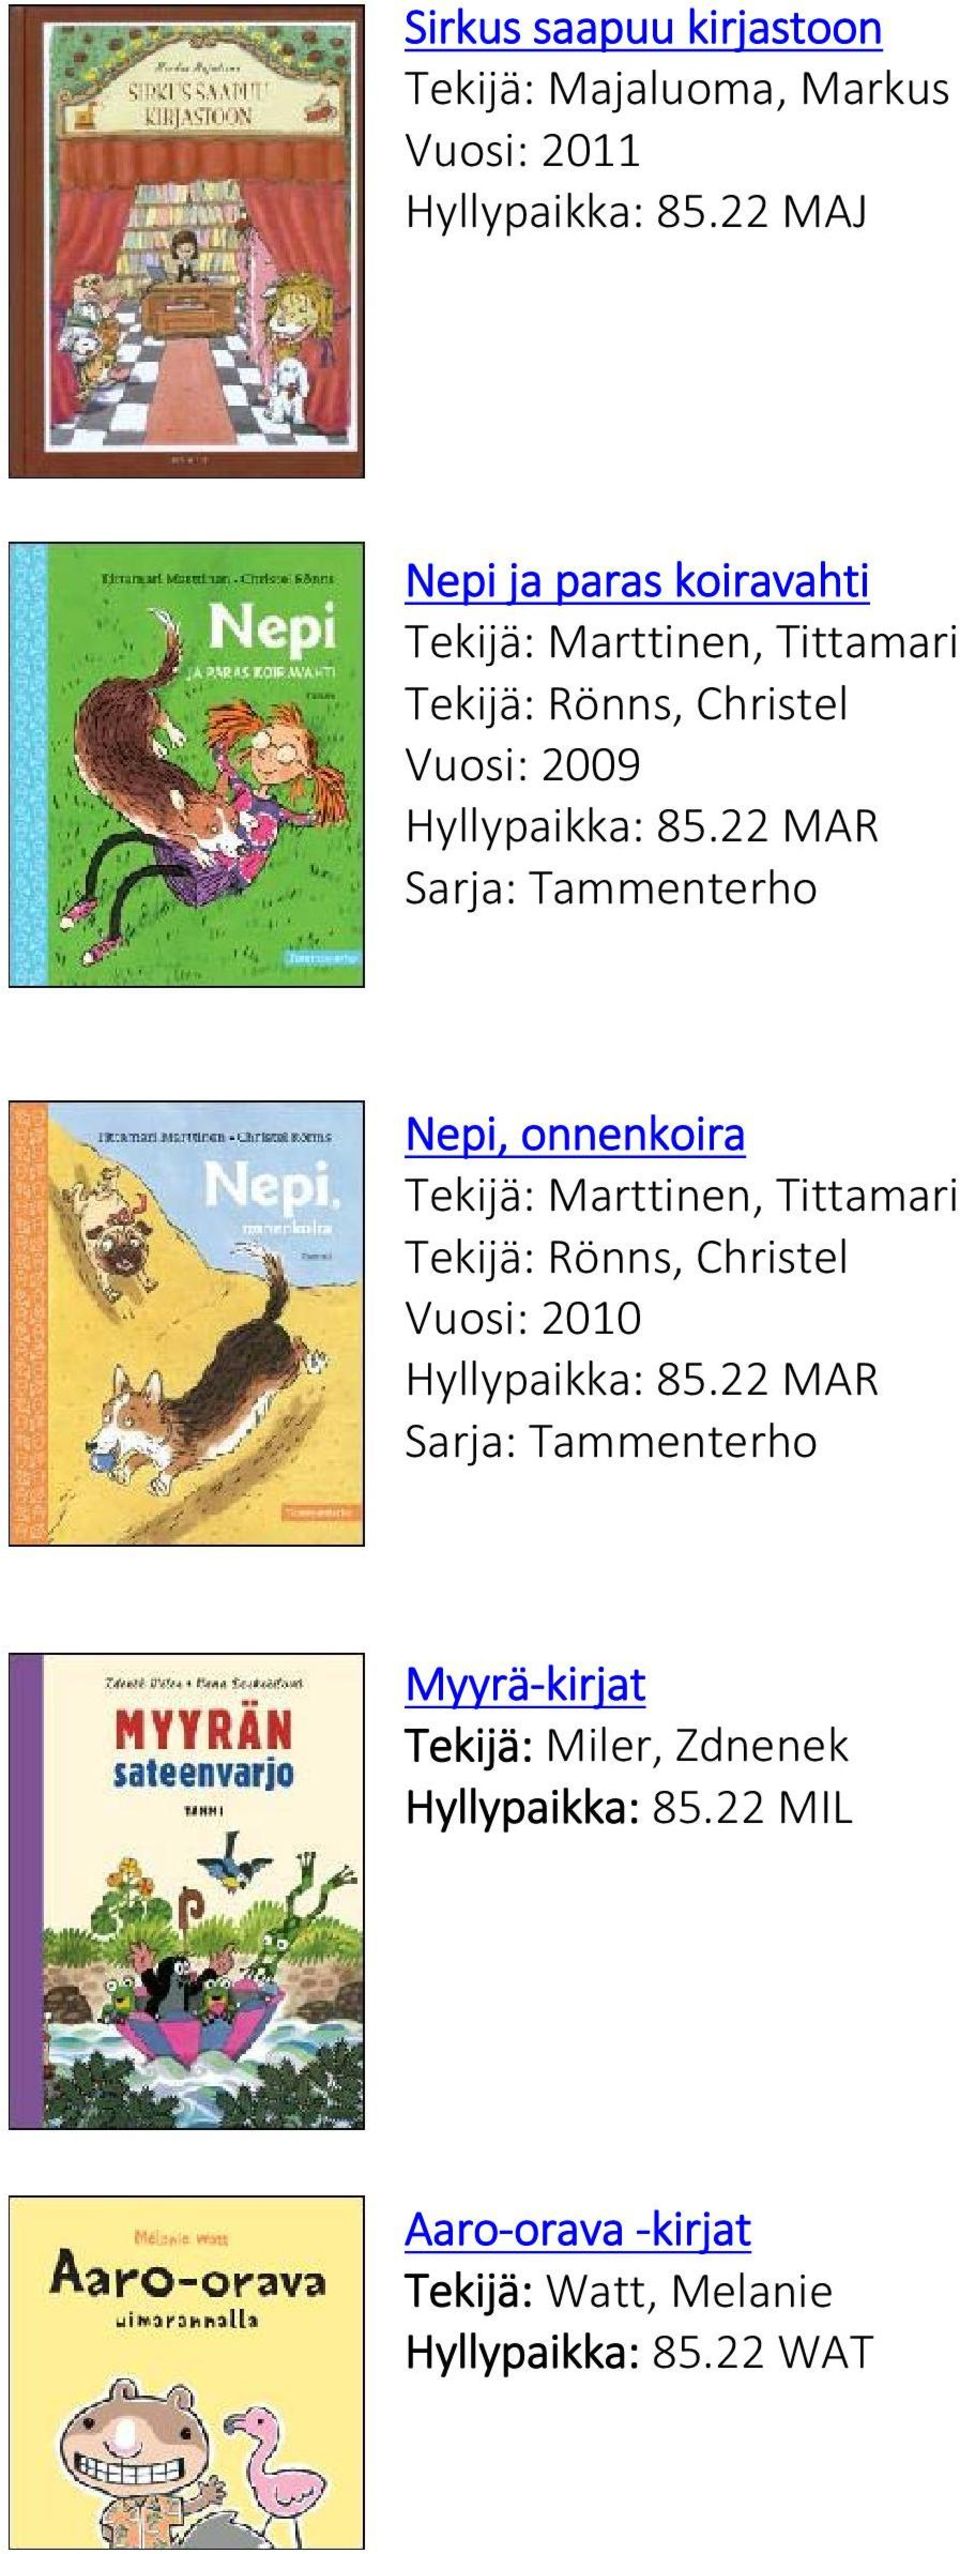 22 MAR Sarja: Tammenterho Nepi, onnenkoira Tekijä: Marttinen, Tittamari Tekijä: Rönns, Christel Vuosi: 2010